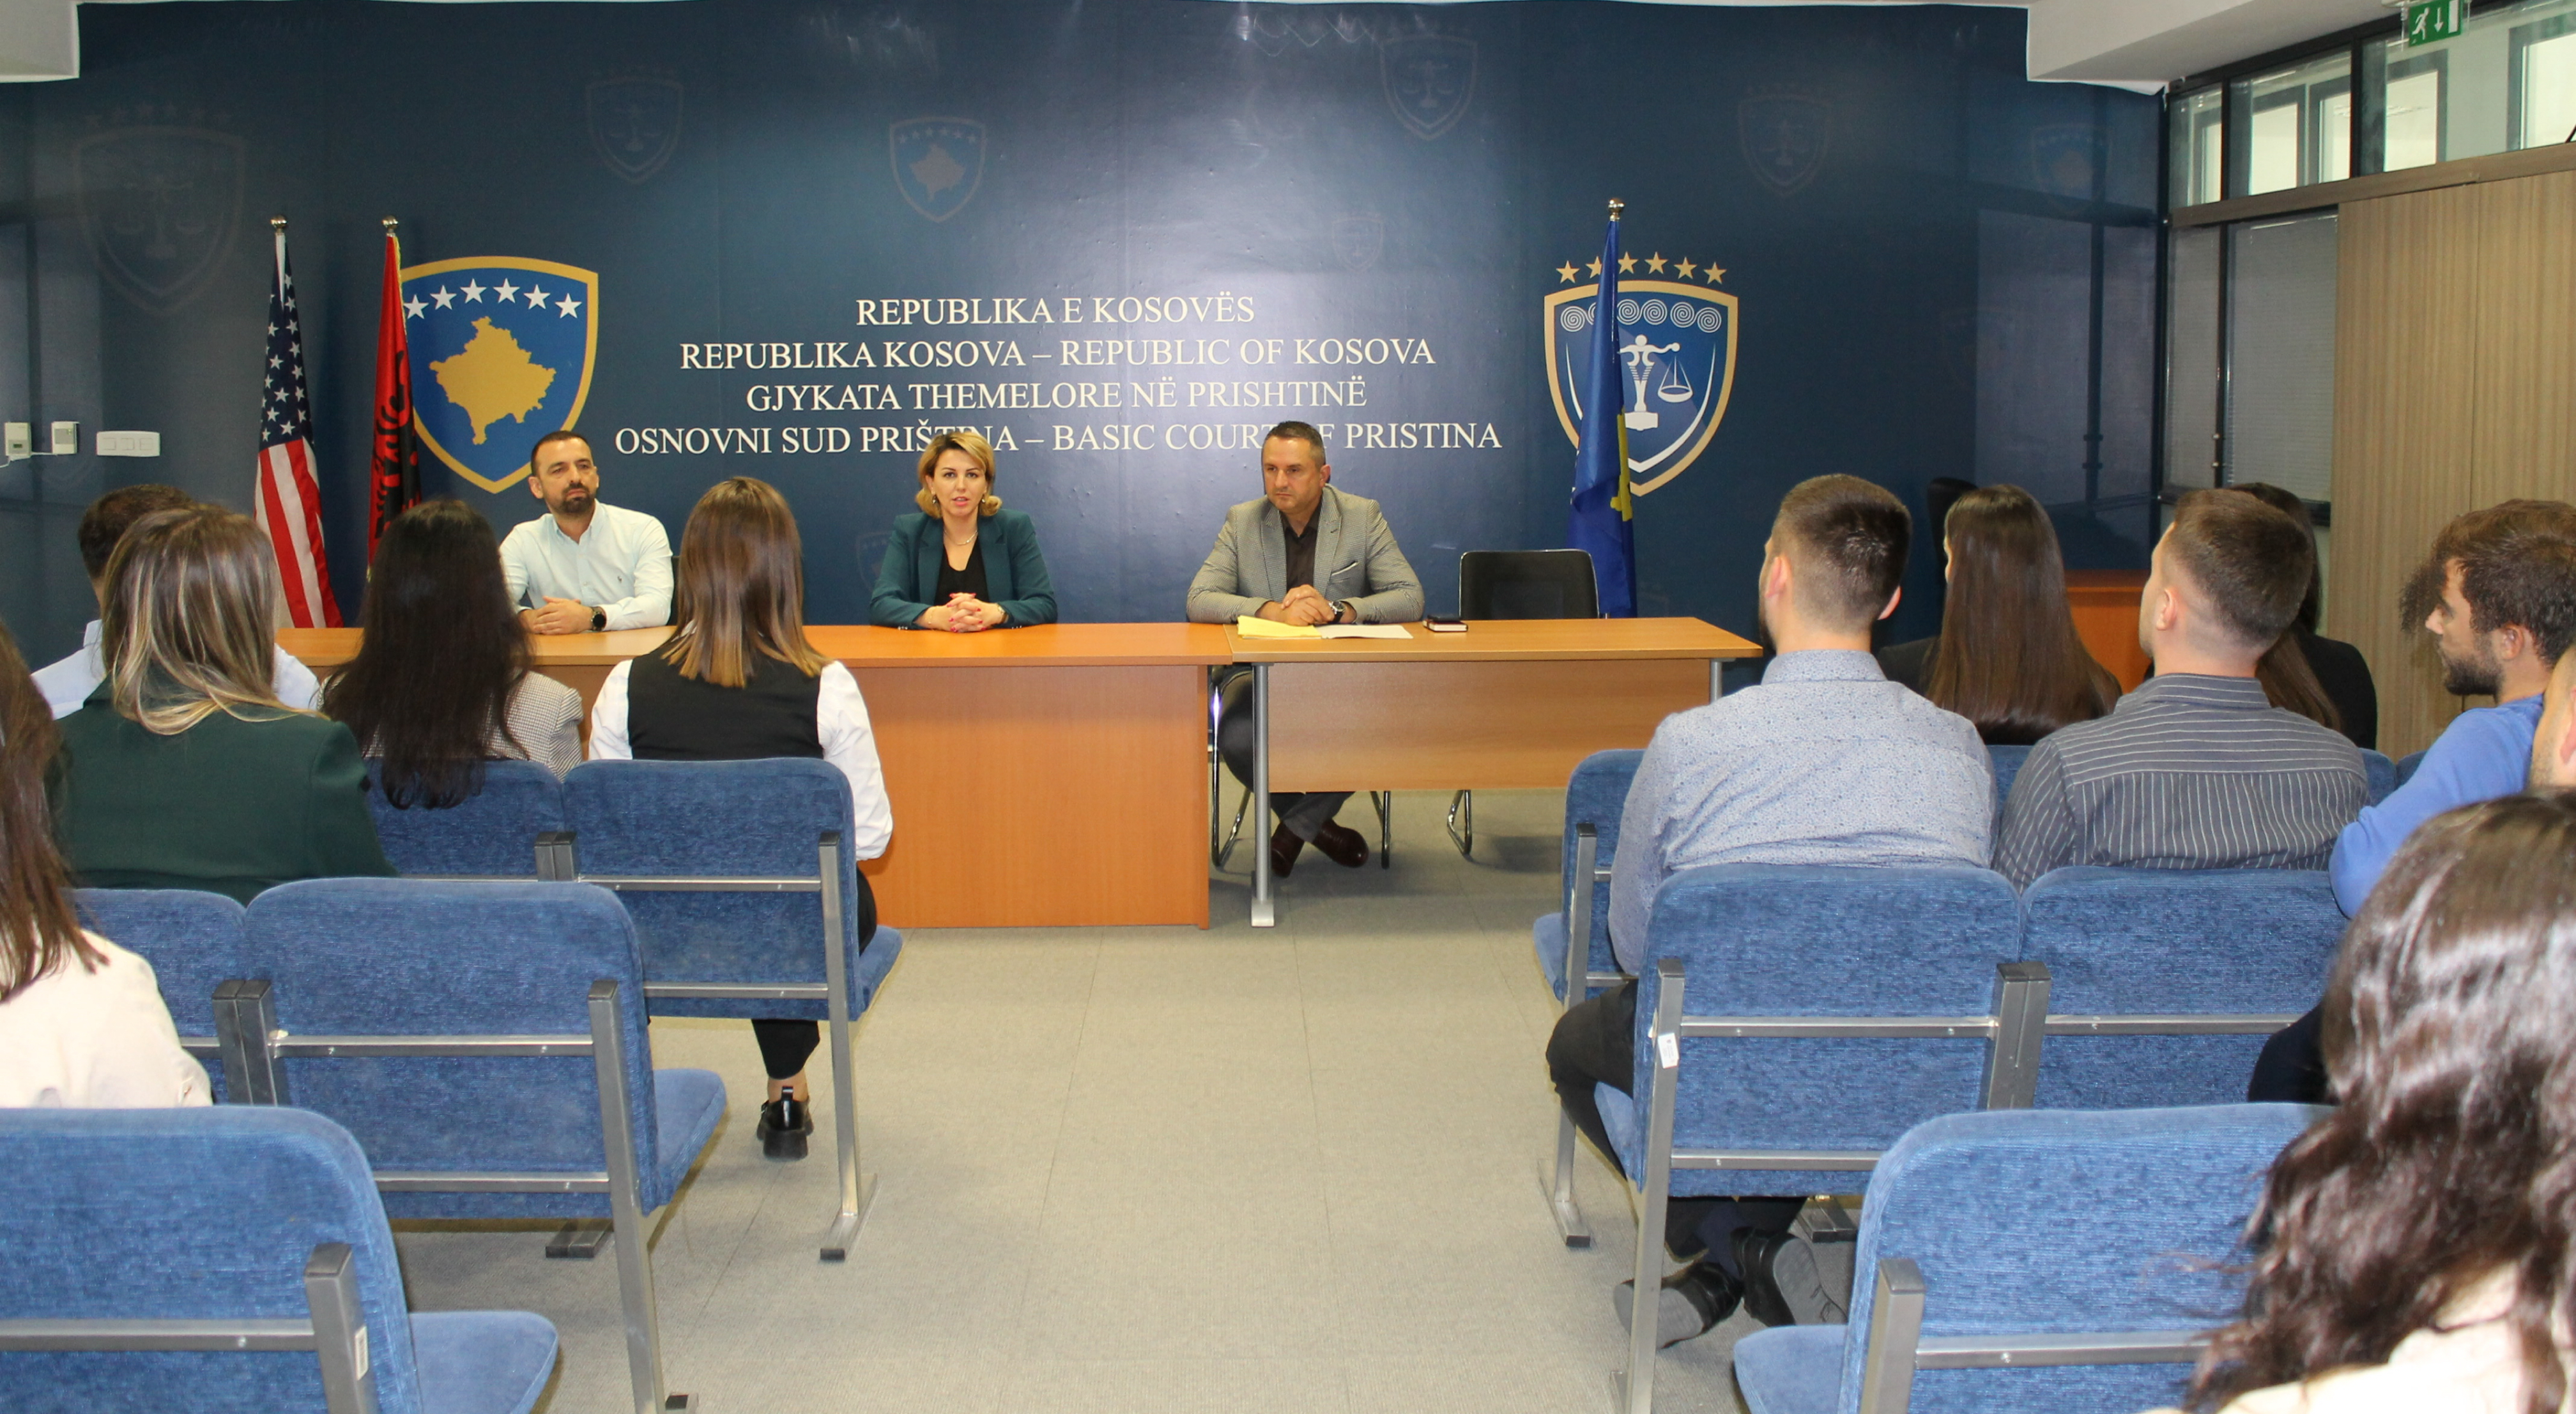 Në Gjykatën Themelore të Prishtinës përfunduan praktikën njëvjeçare 29 juristë